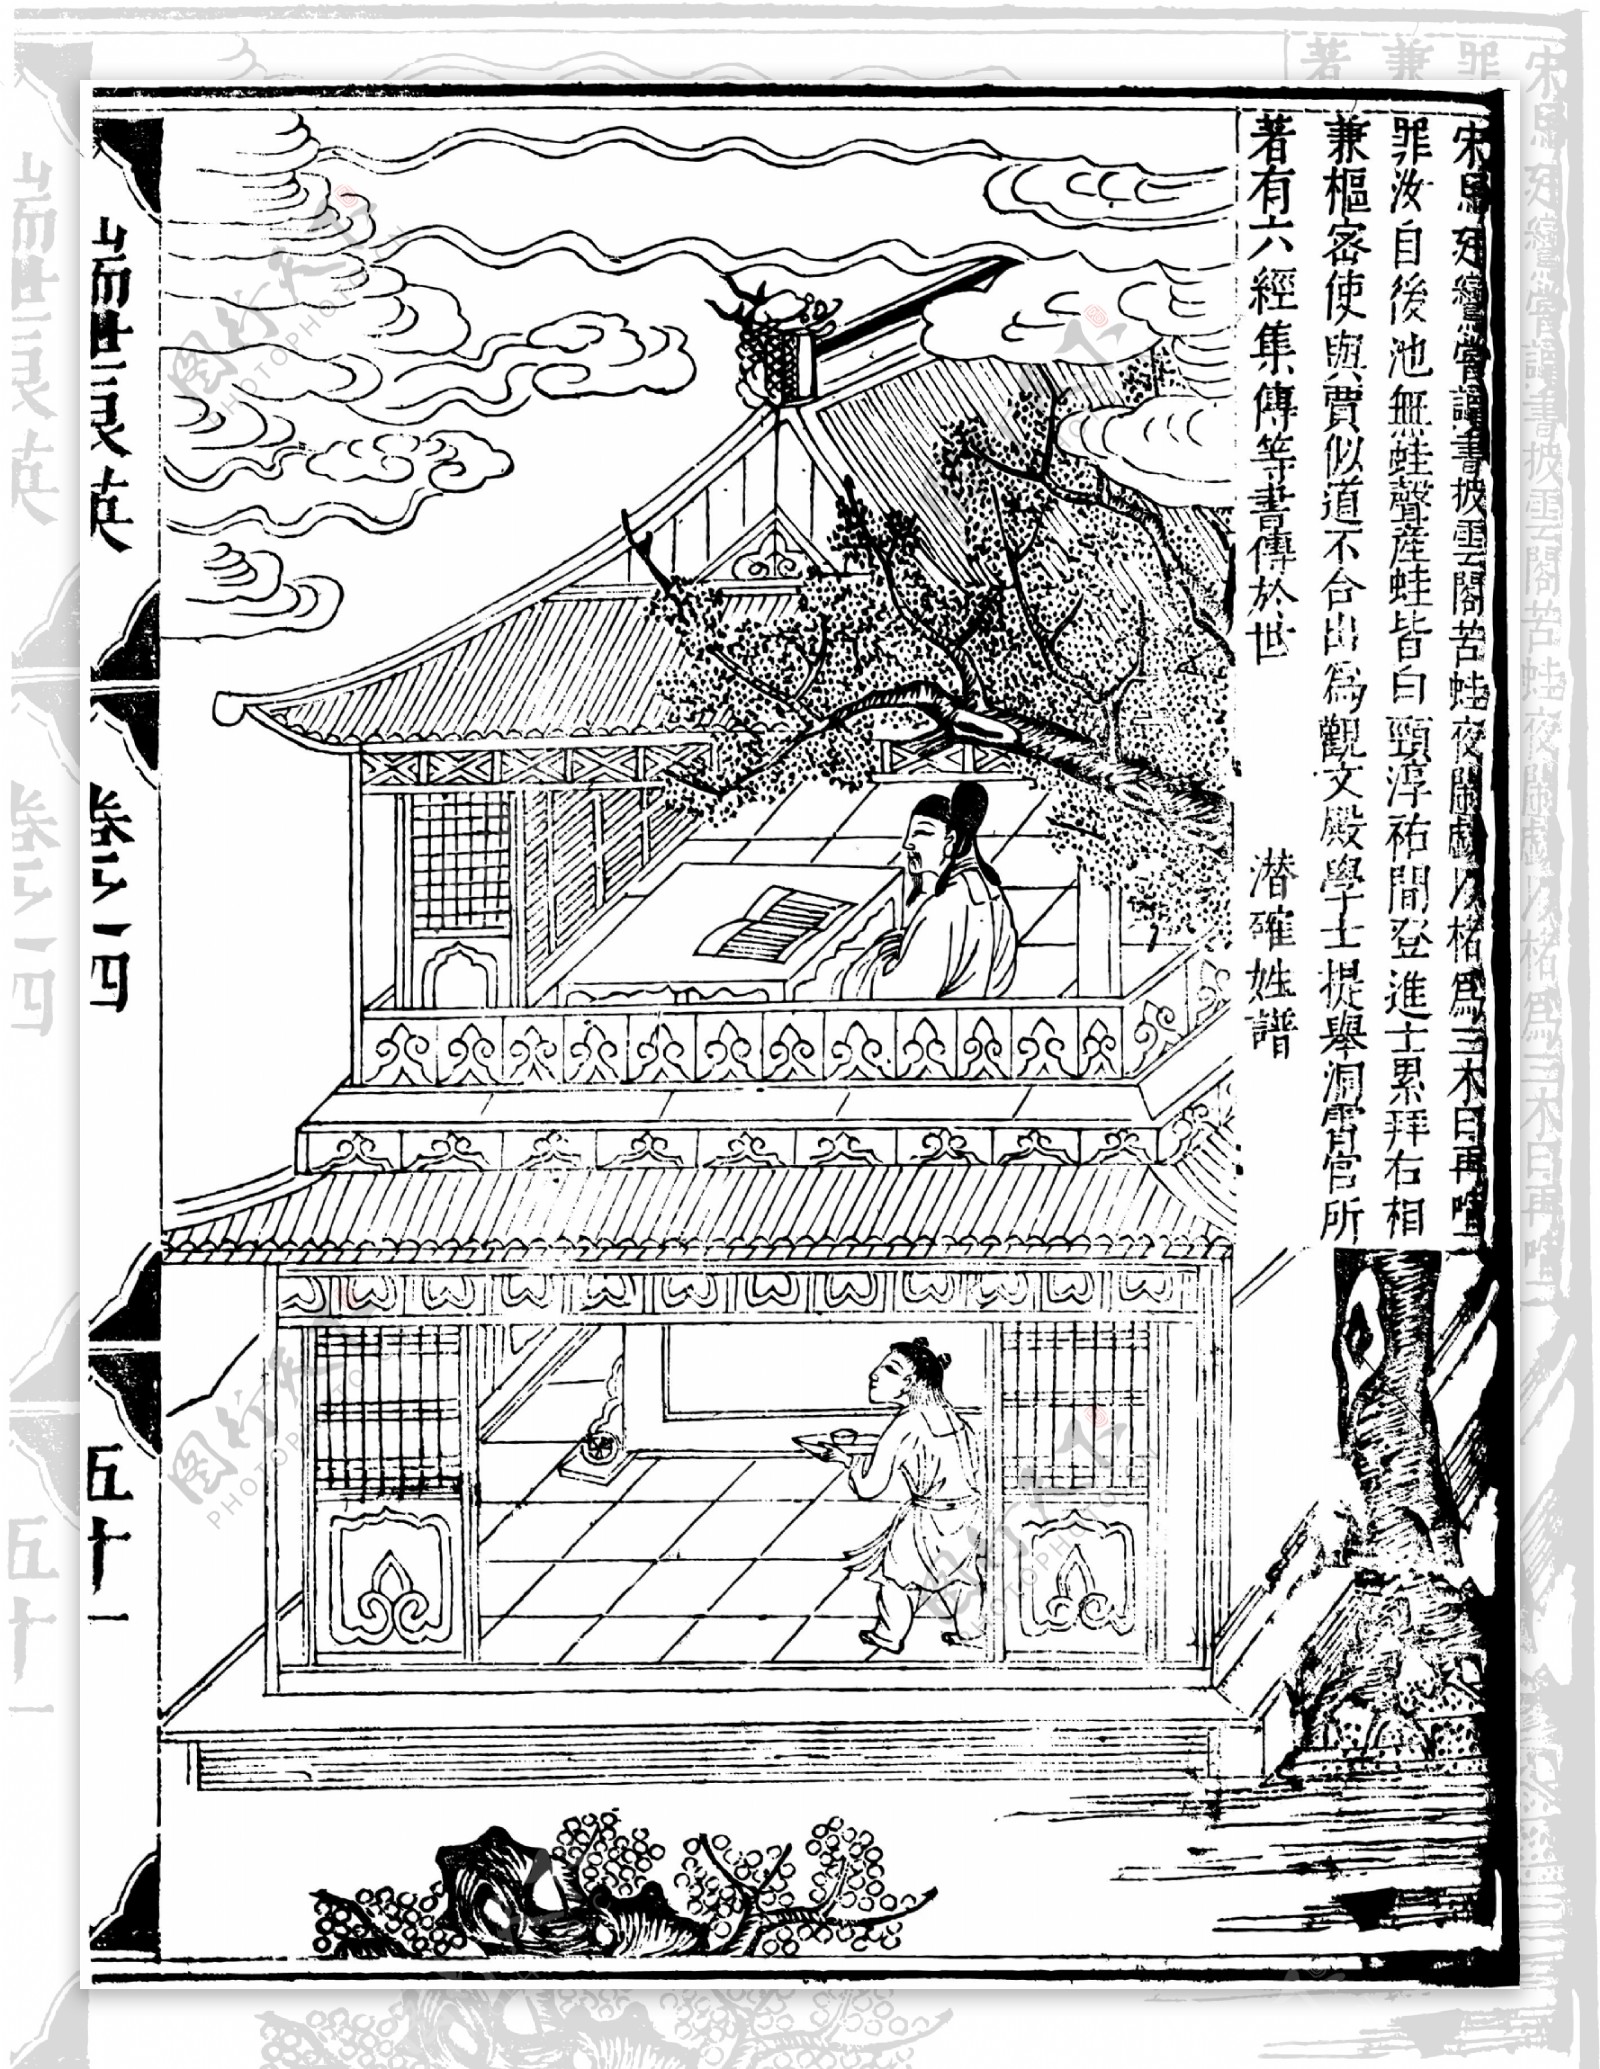 瑞世良英木刻版画中国传统文化29